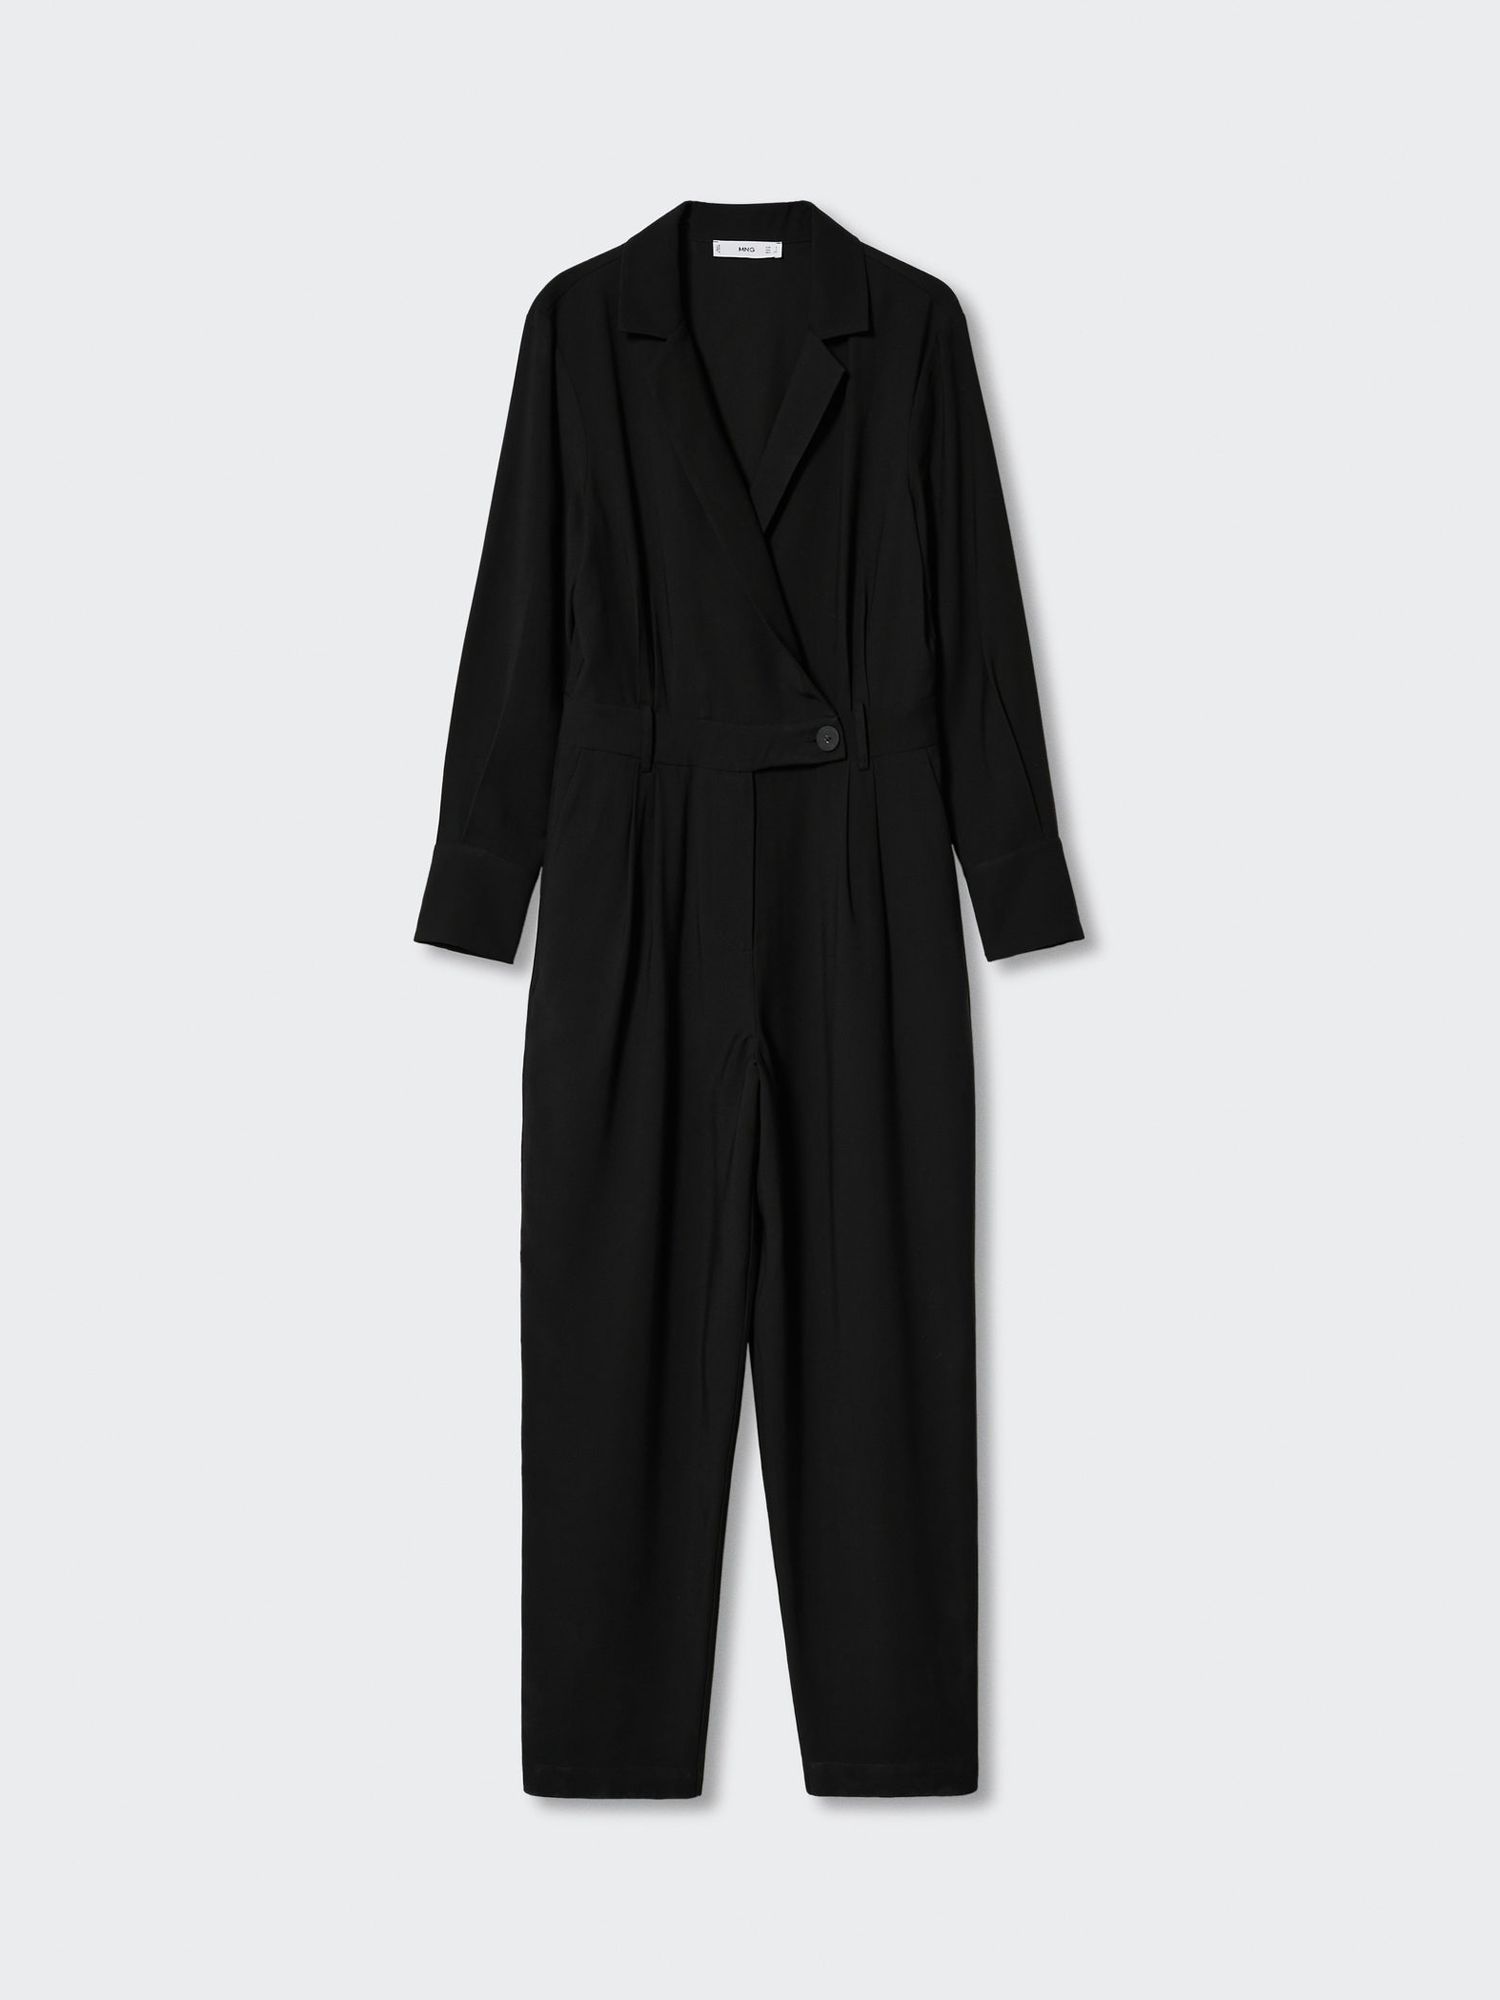 Mango Suit-Style Jumpsuit, Black at John Lewis & Partners